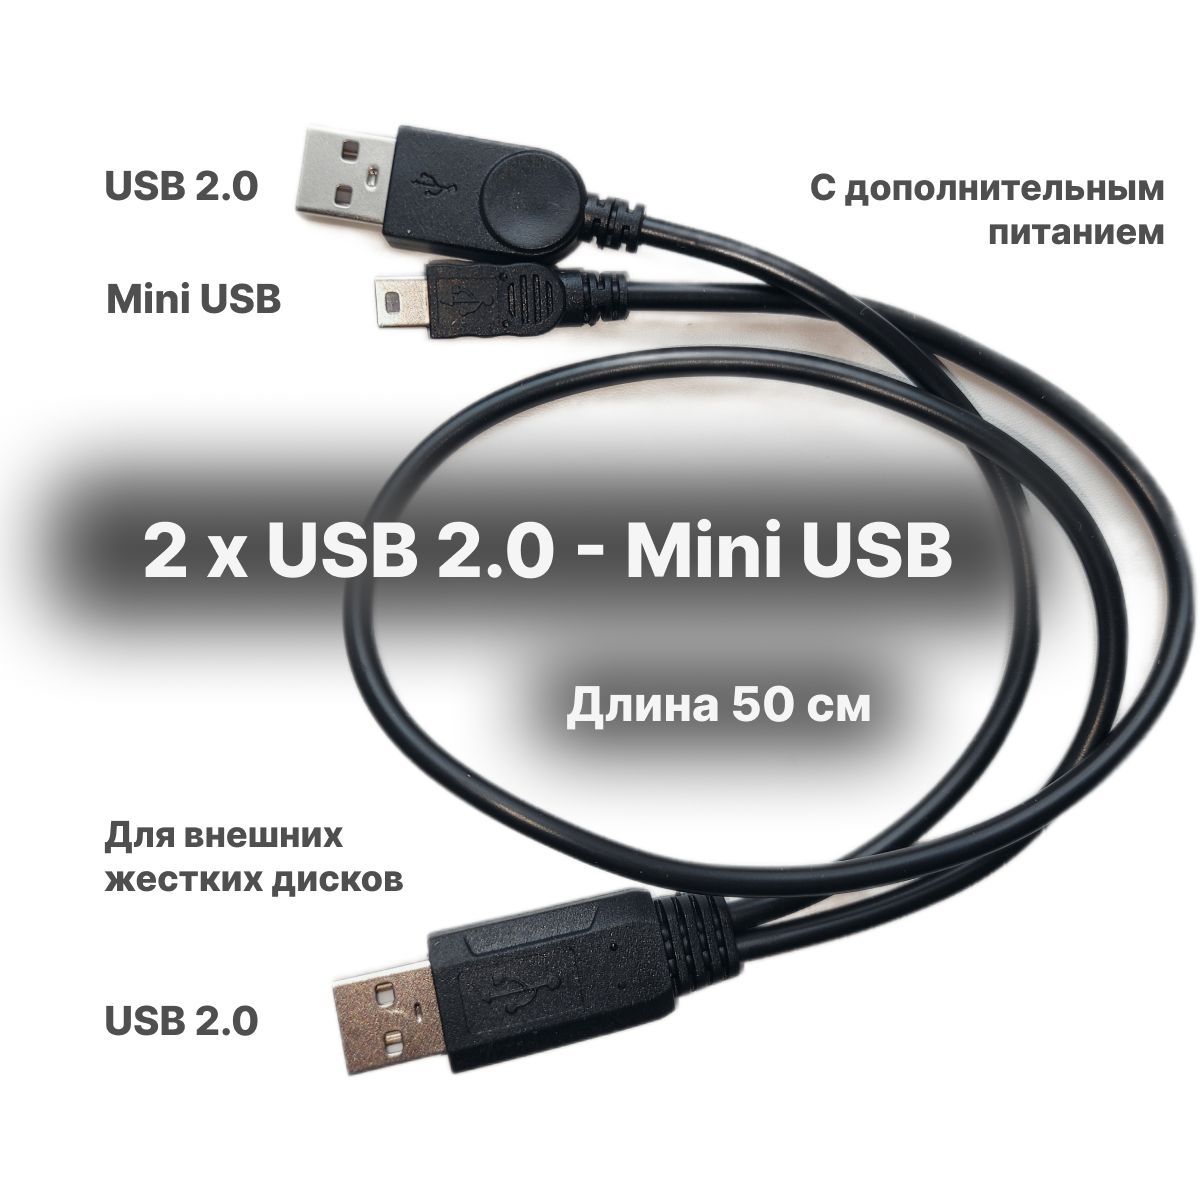 Как выбрать или изготовить USB-хаб